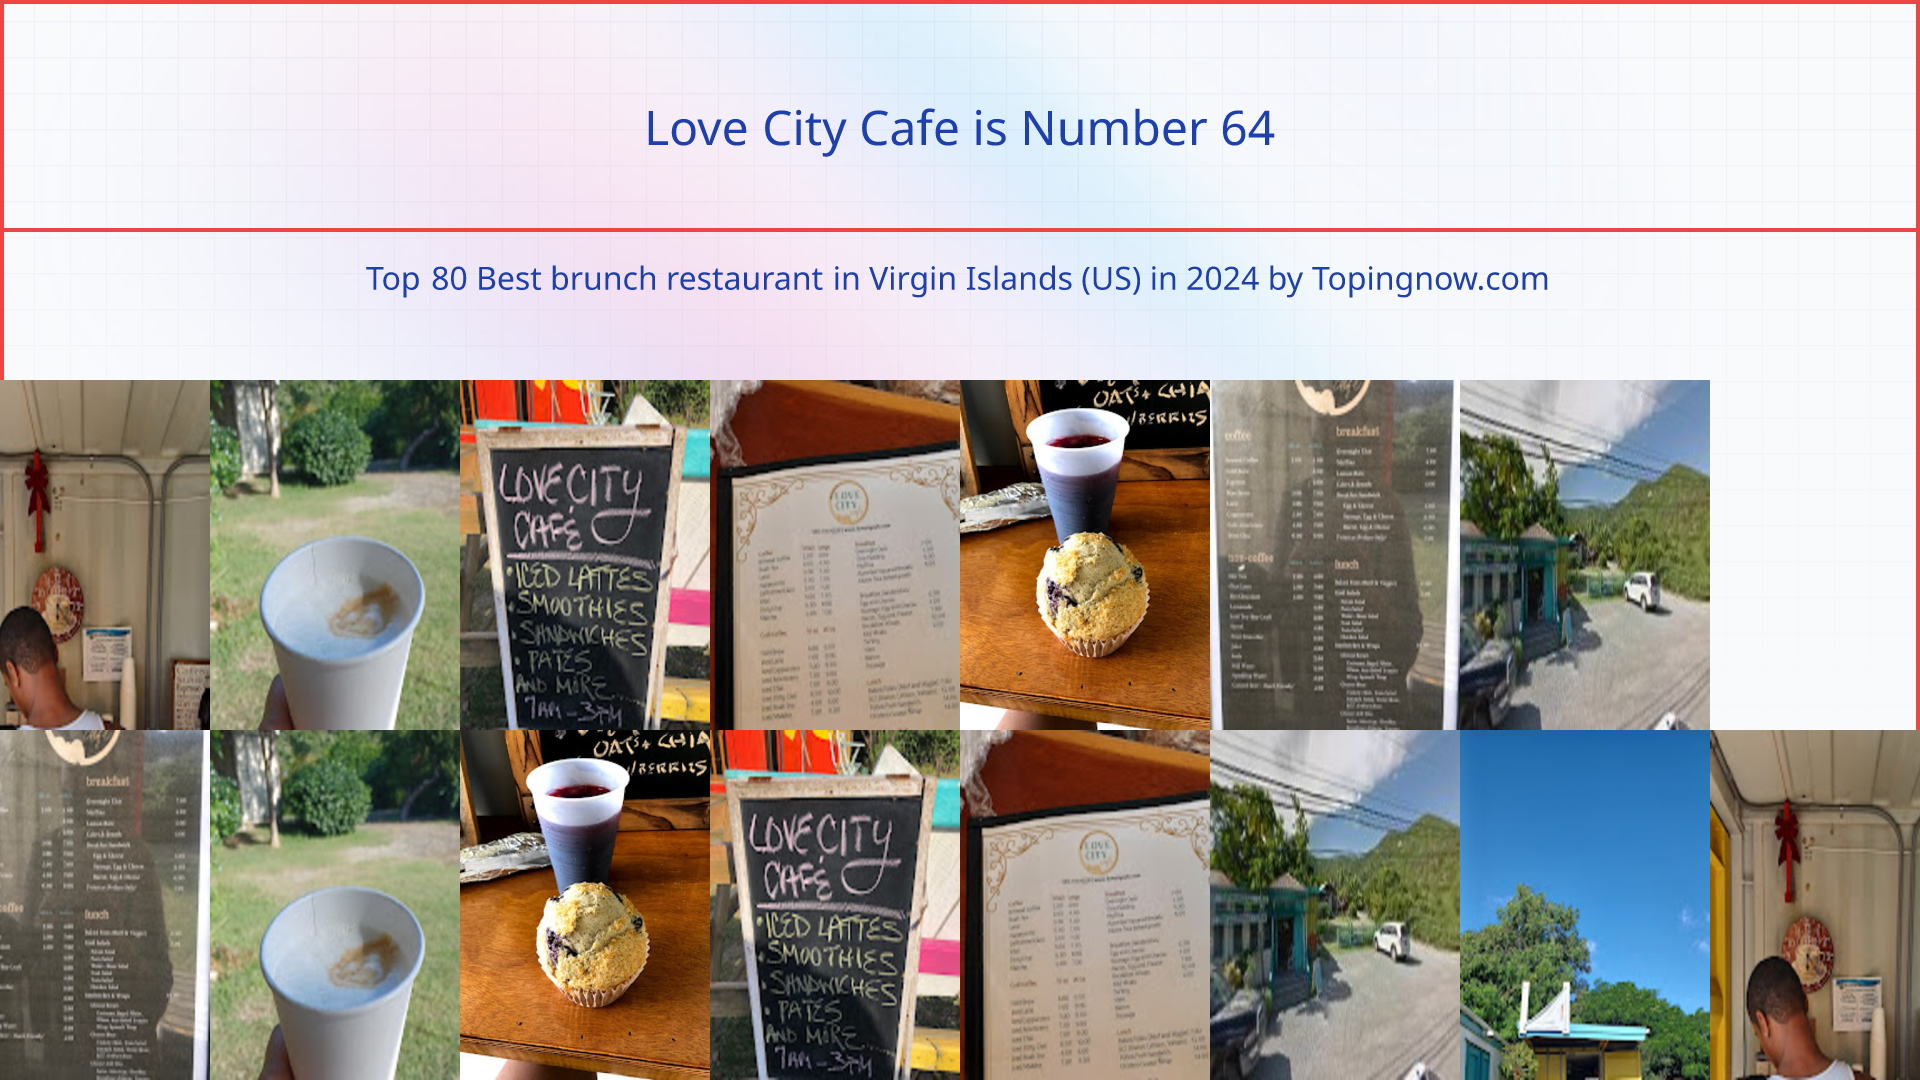 Love City Cafe: Top 80 Best brunch restaurant in Virgin Islands (US) in 2024